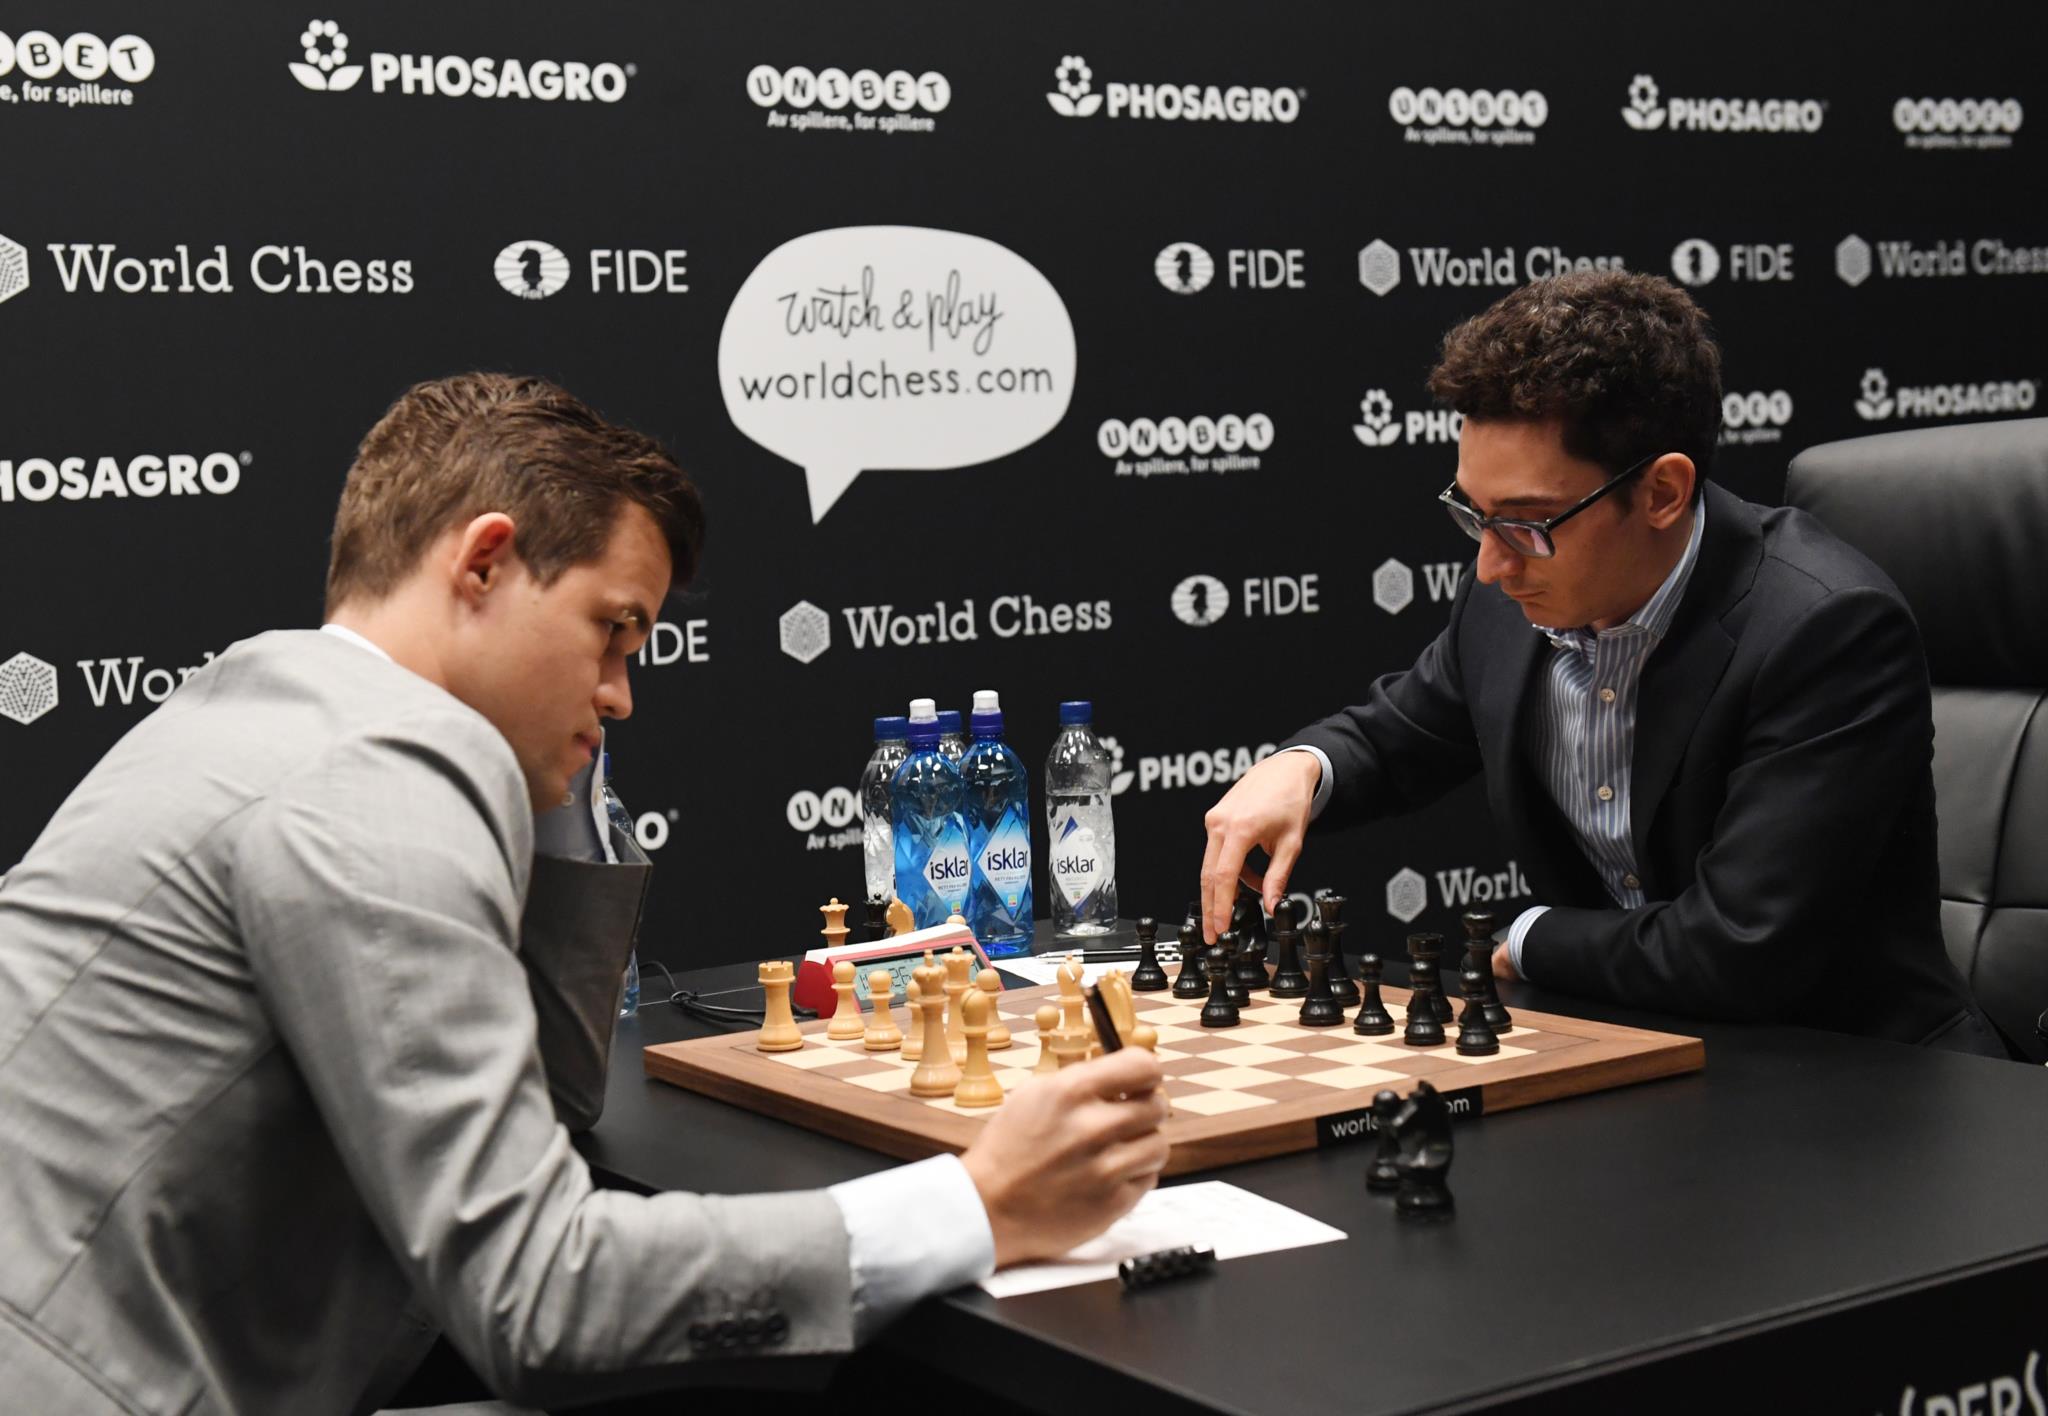 Alexander Alekhine  Melhores Jogadores de Xadrez 